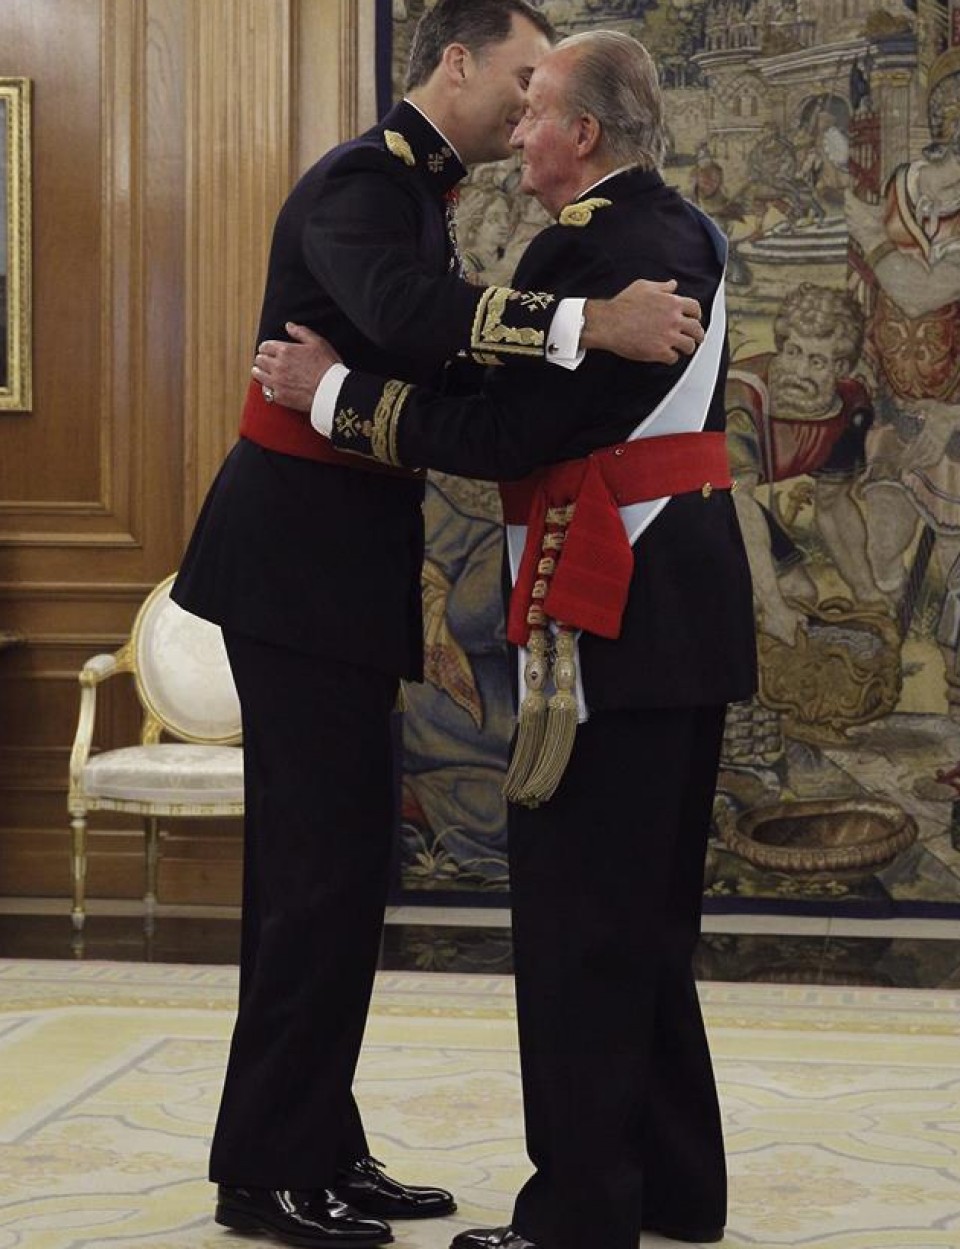 El rey Juan Carlos I entrega el fajín de capitán general de los ejércitos a su hijo Felipe VI. EFE